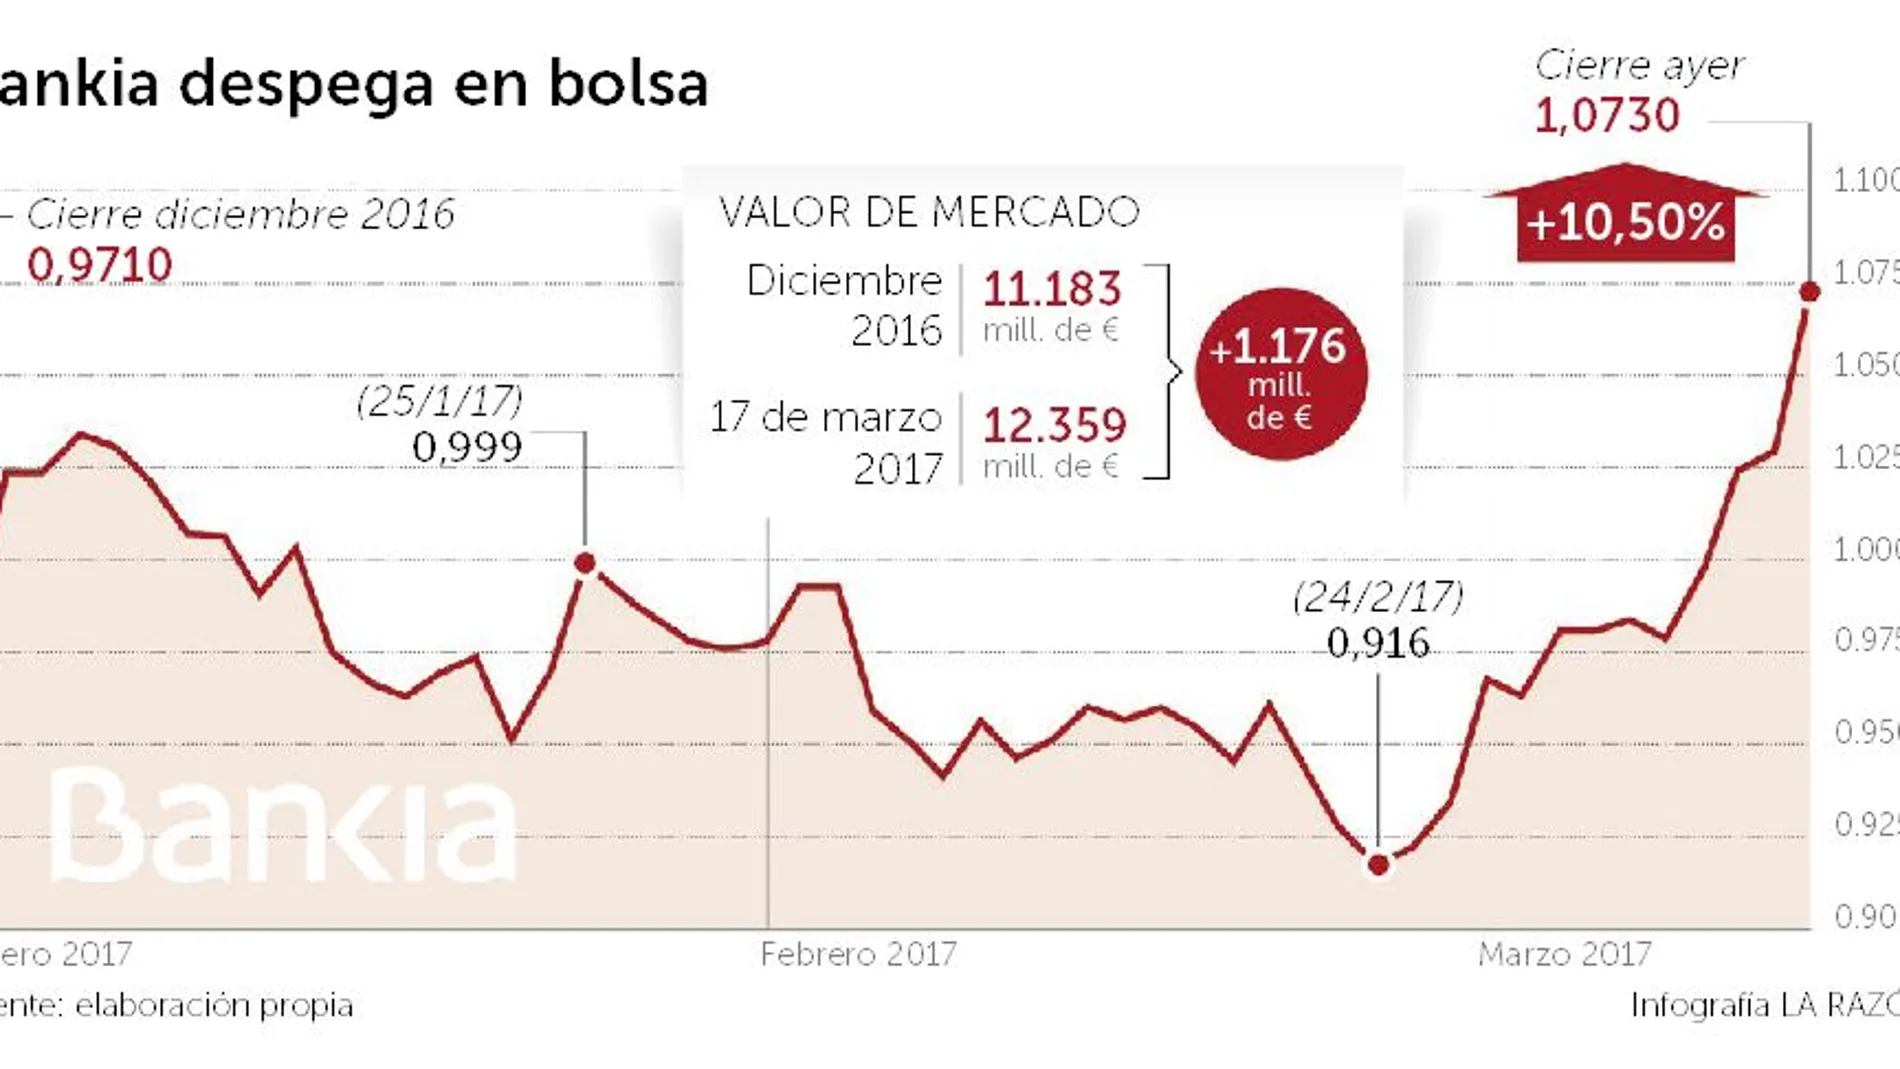 La fusión con BMN eleva el valor de Bankia 565 millones